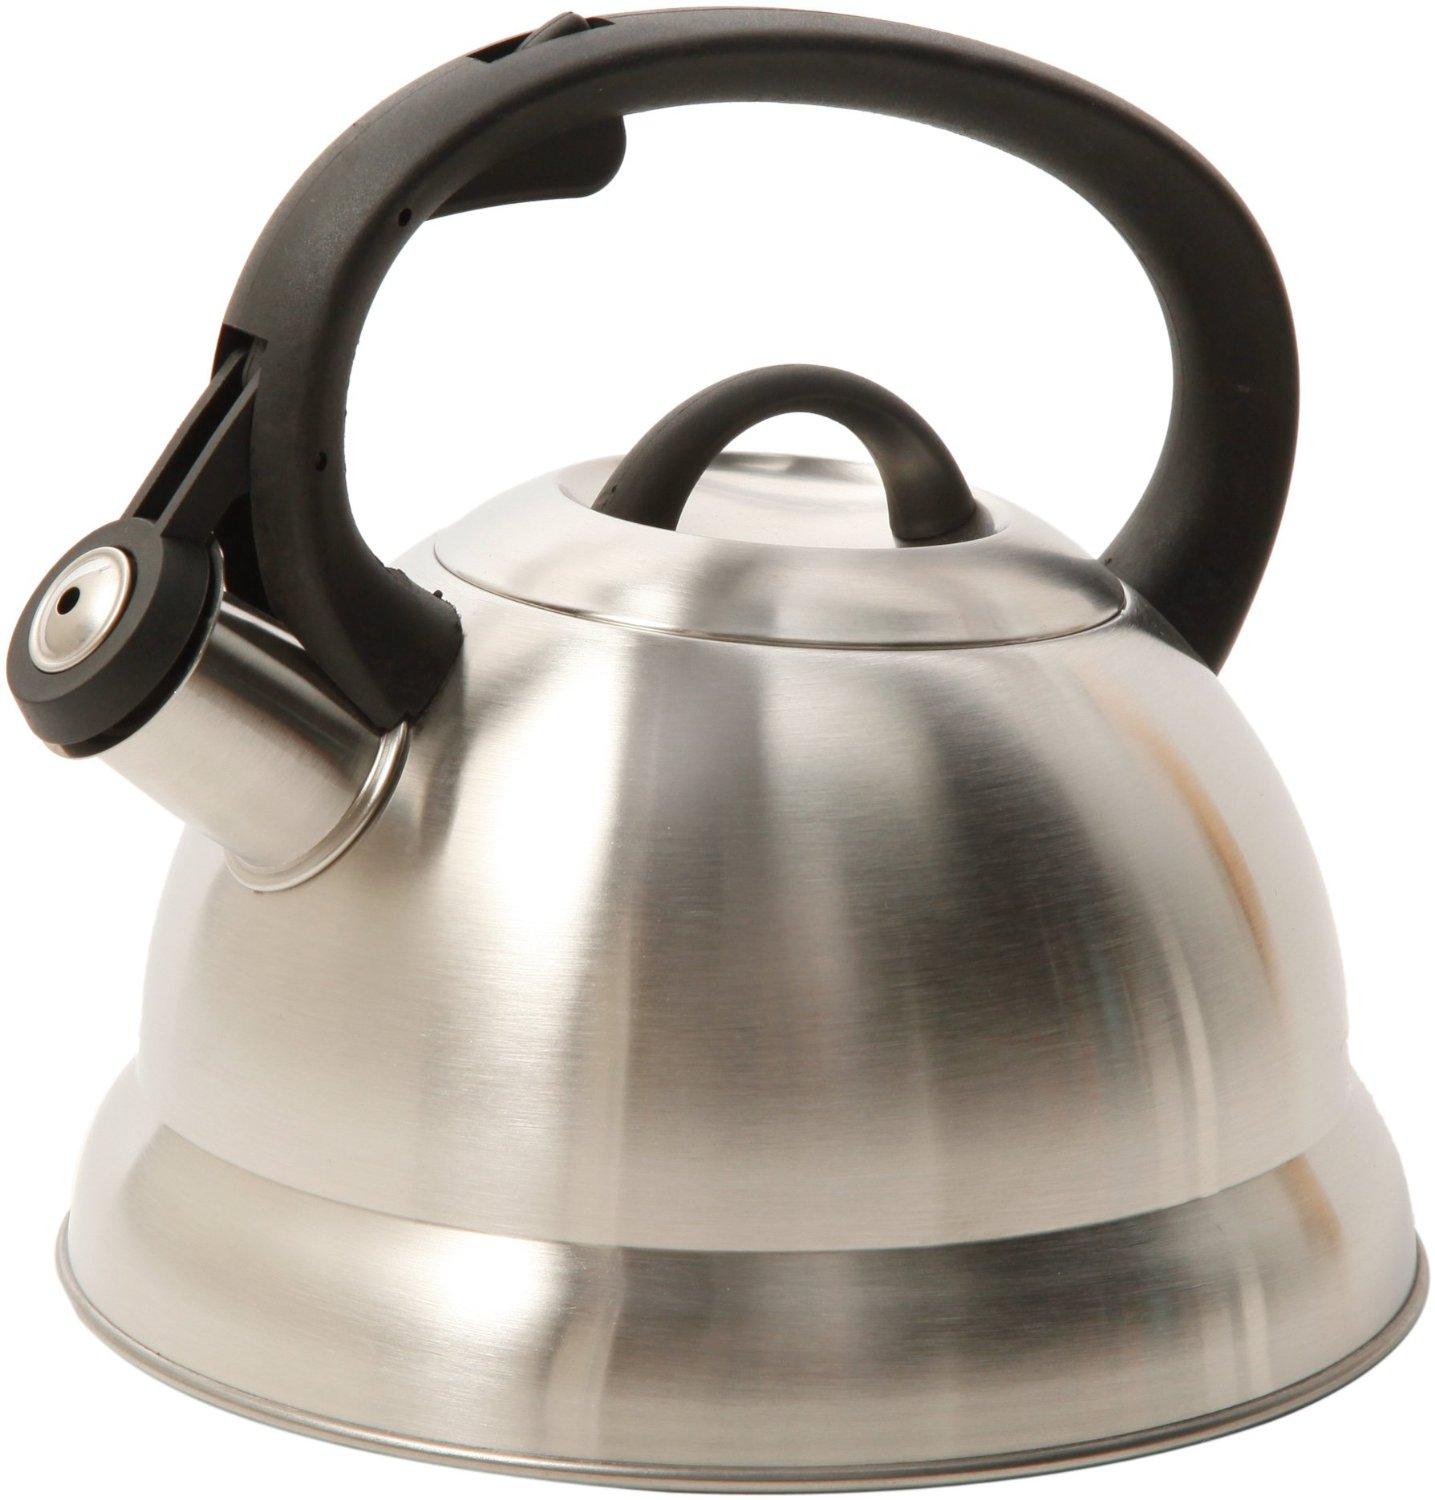 Mr. Coffee Flintshire Flip-Up Spout Tea Pot Kettle, 1.75-Quart